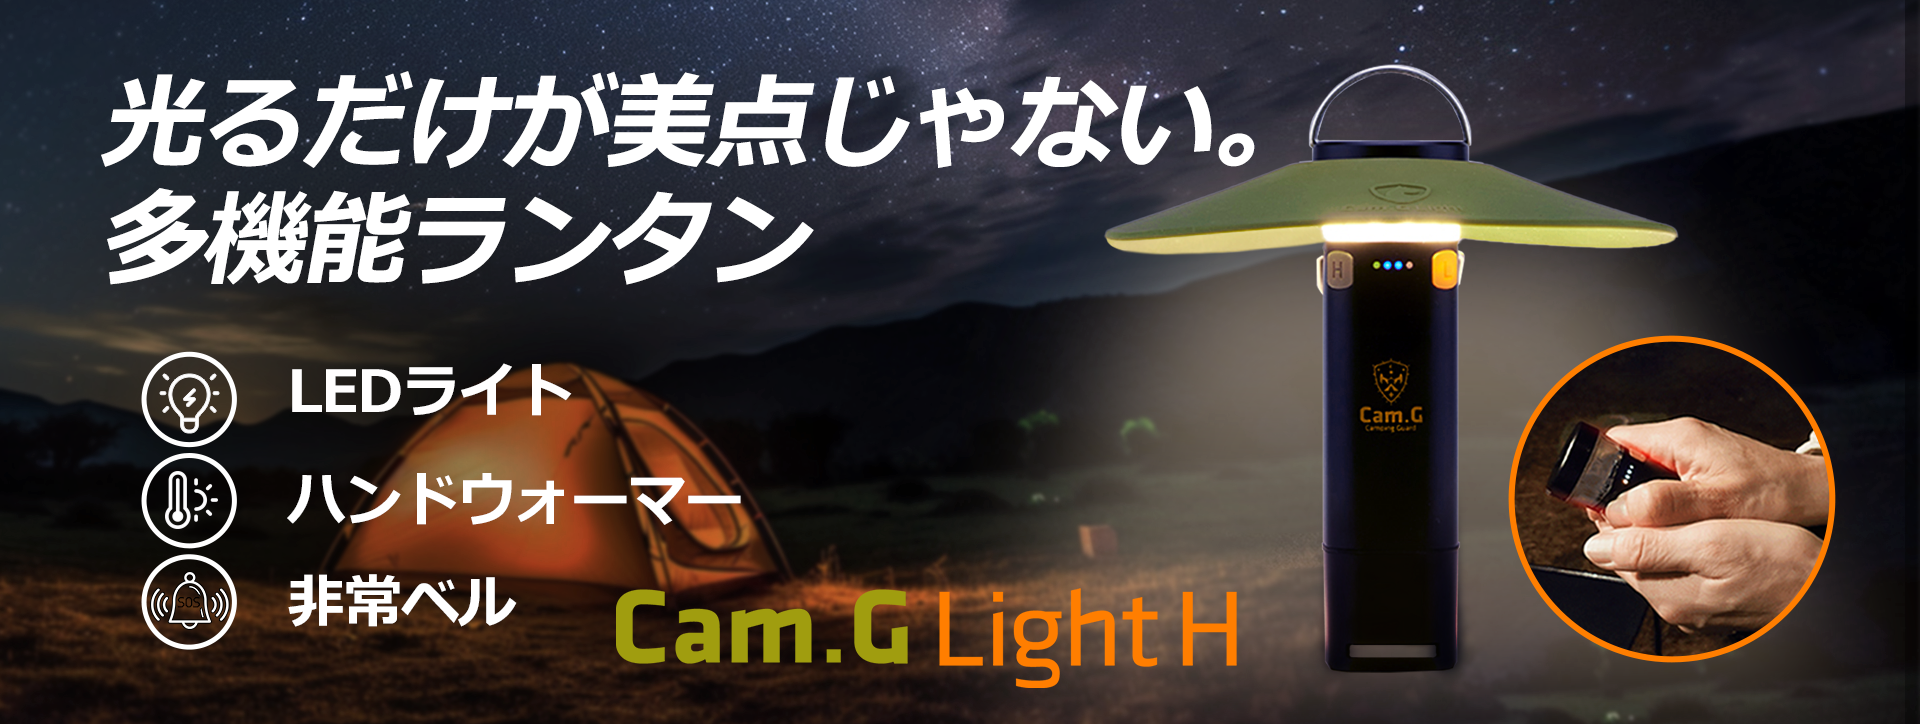 ライトだけじゃない、3in1多機能ランタン「Cam.G Light H」クラウドファンディング実施予定！